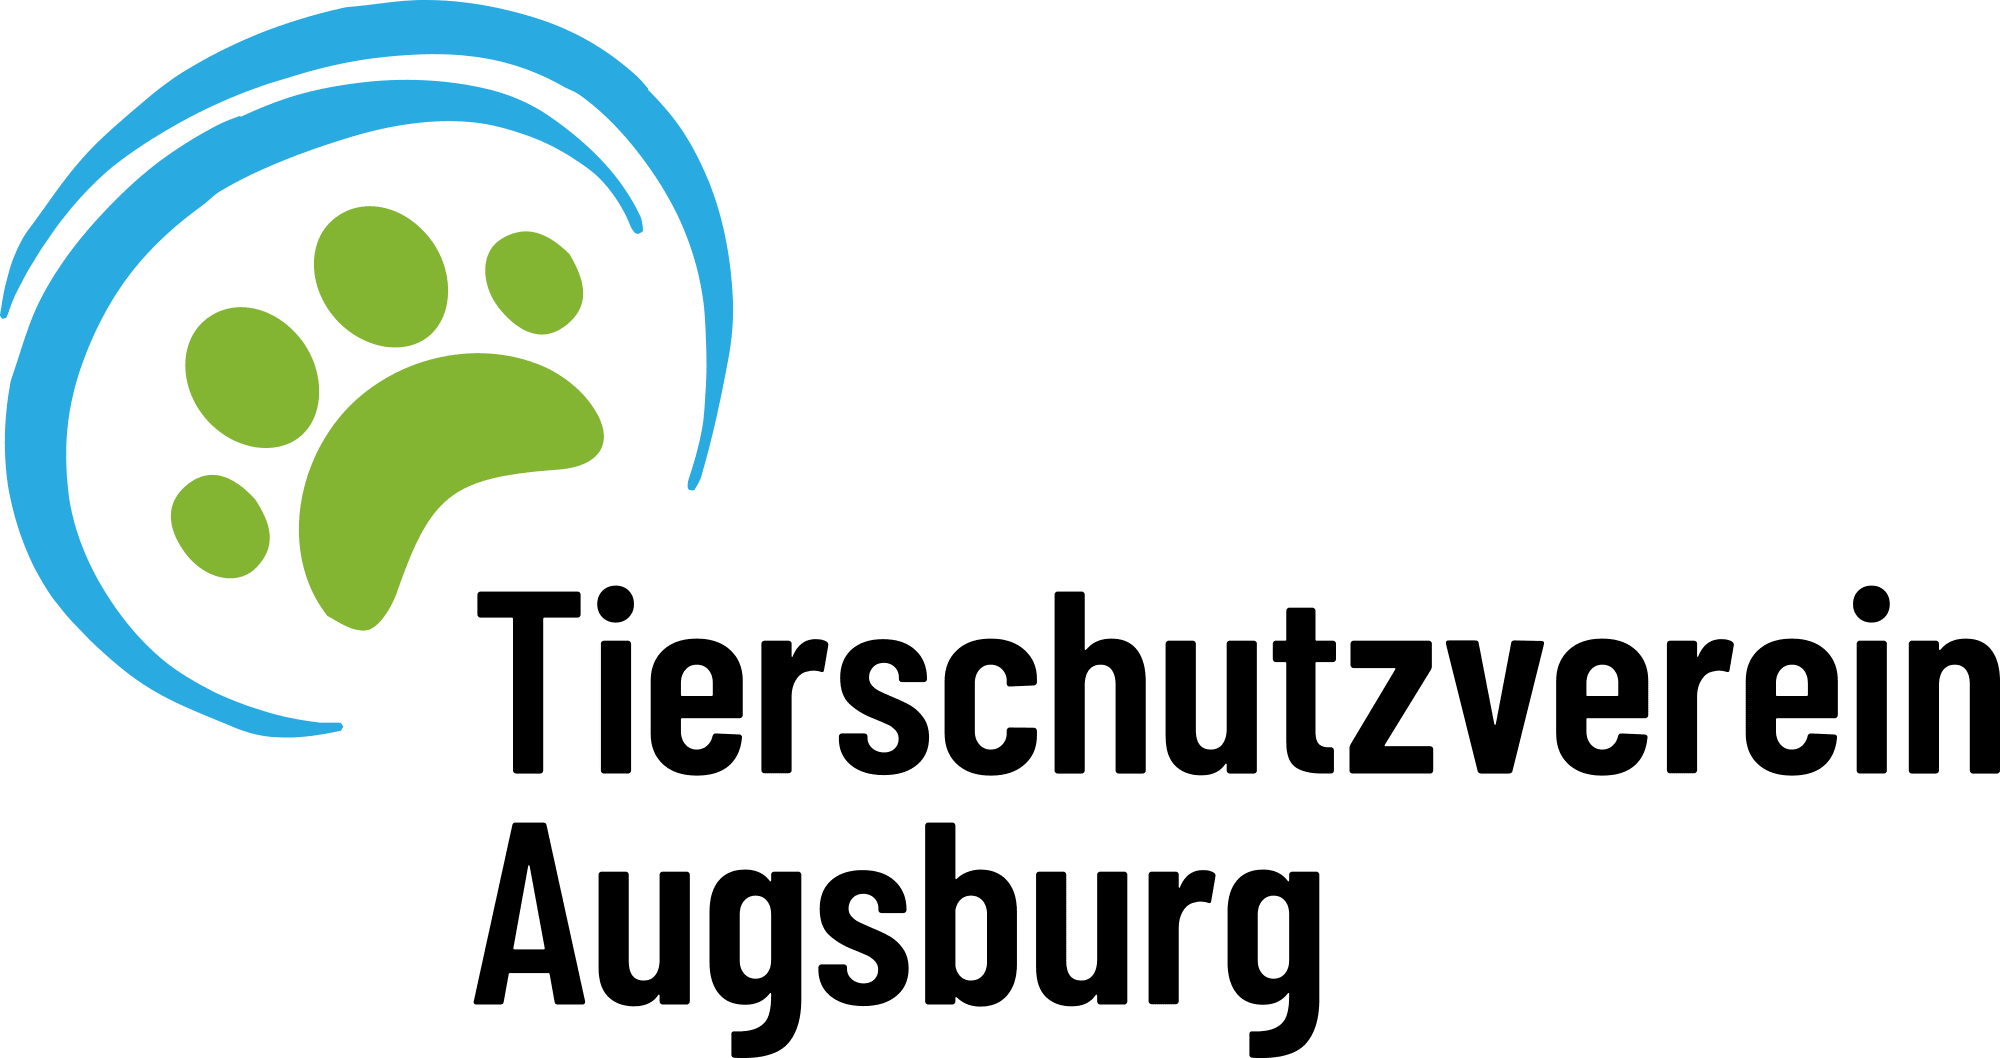 Tierschutzverein Augsburg und Umgebung e. V.